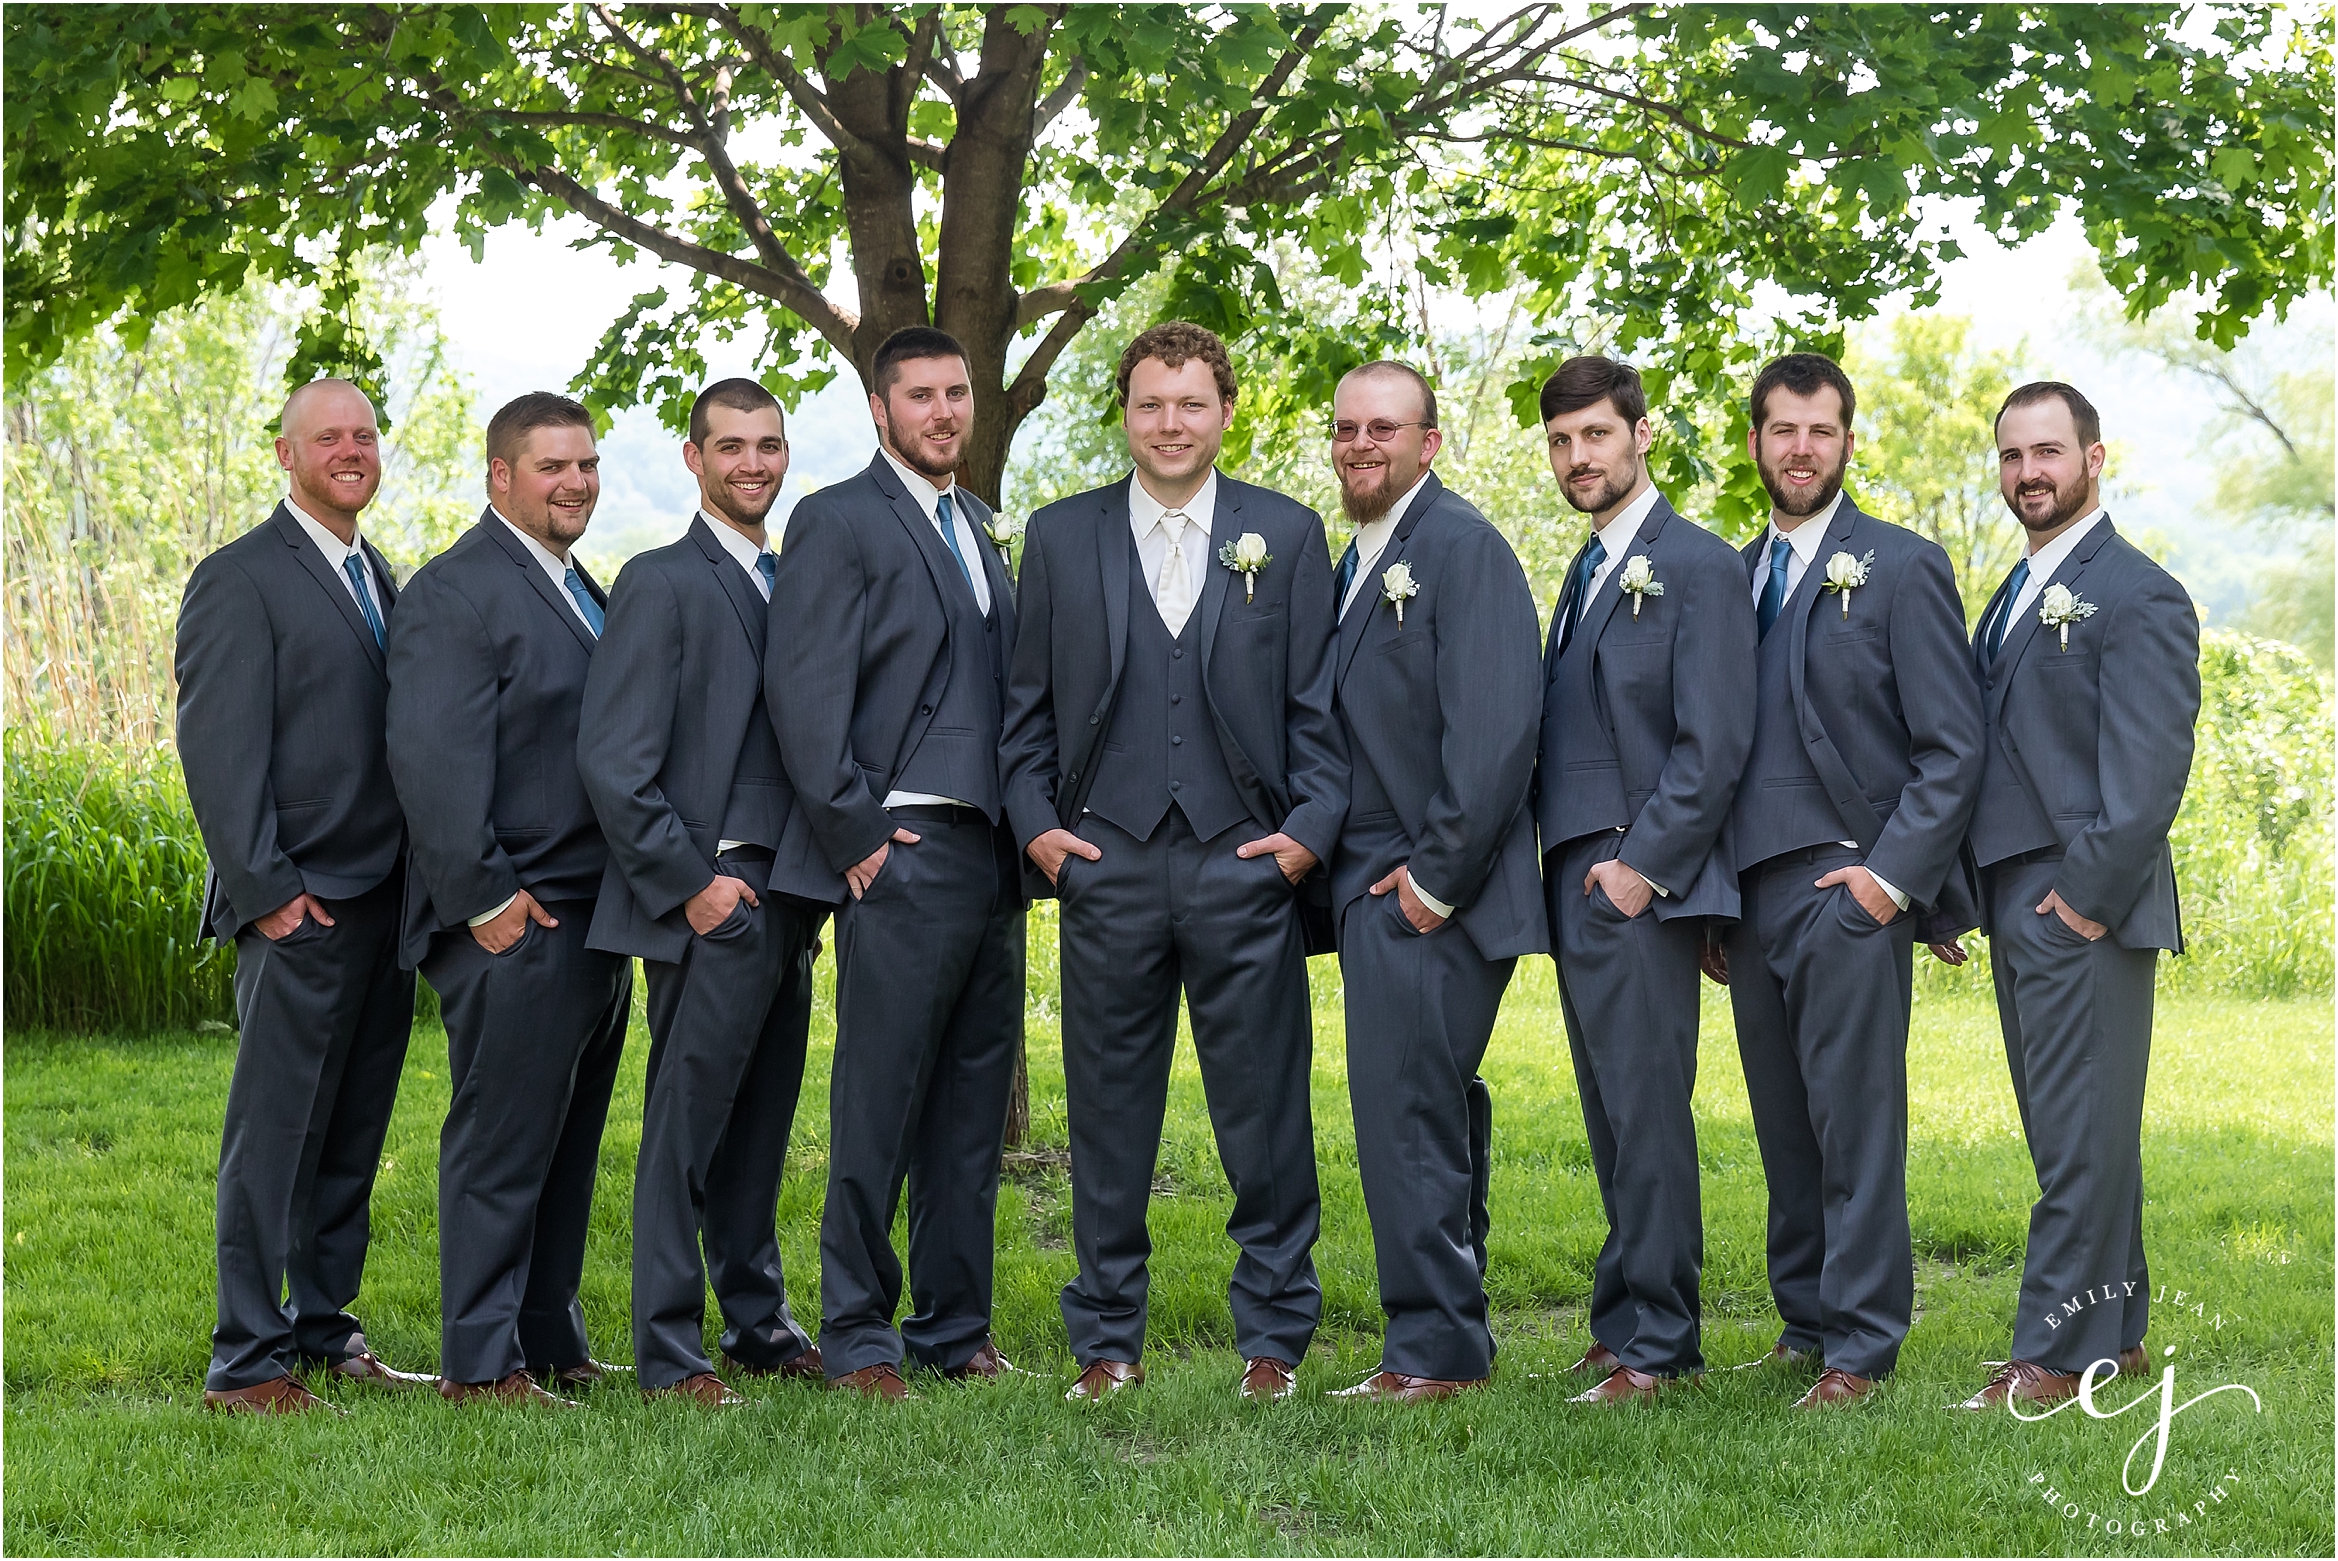 Stoney Creek Wisconsin Summer Wedding groom groomsmen